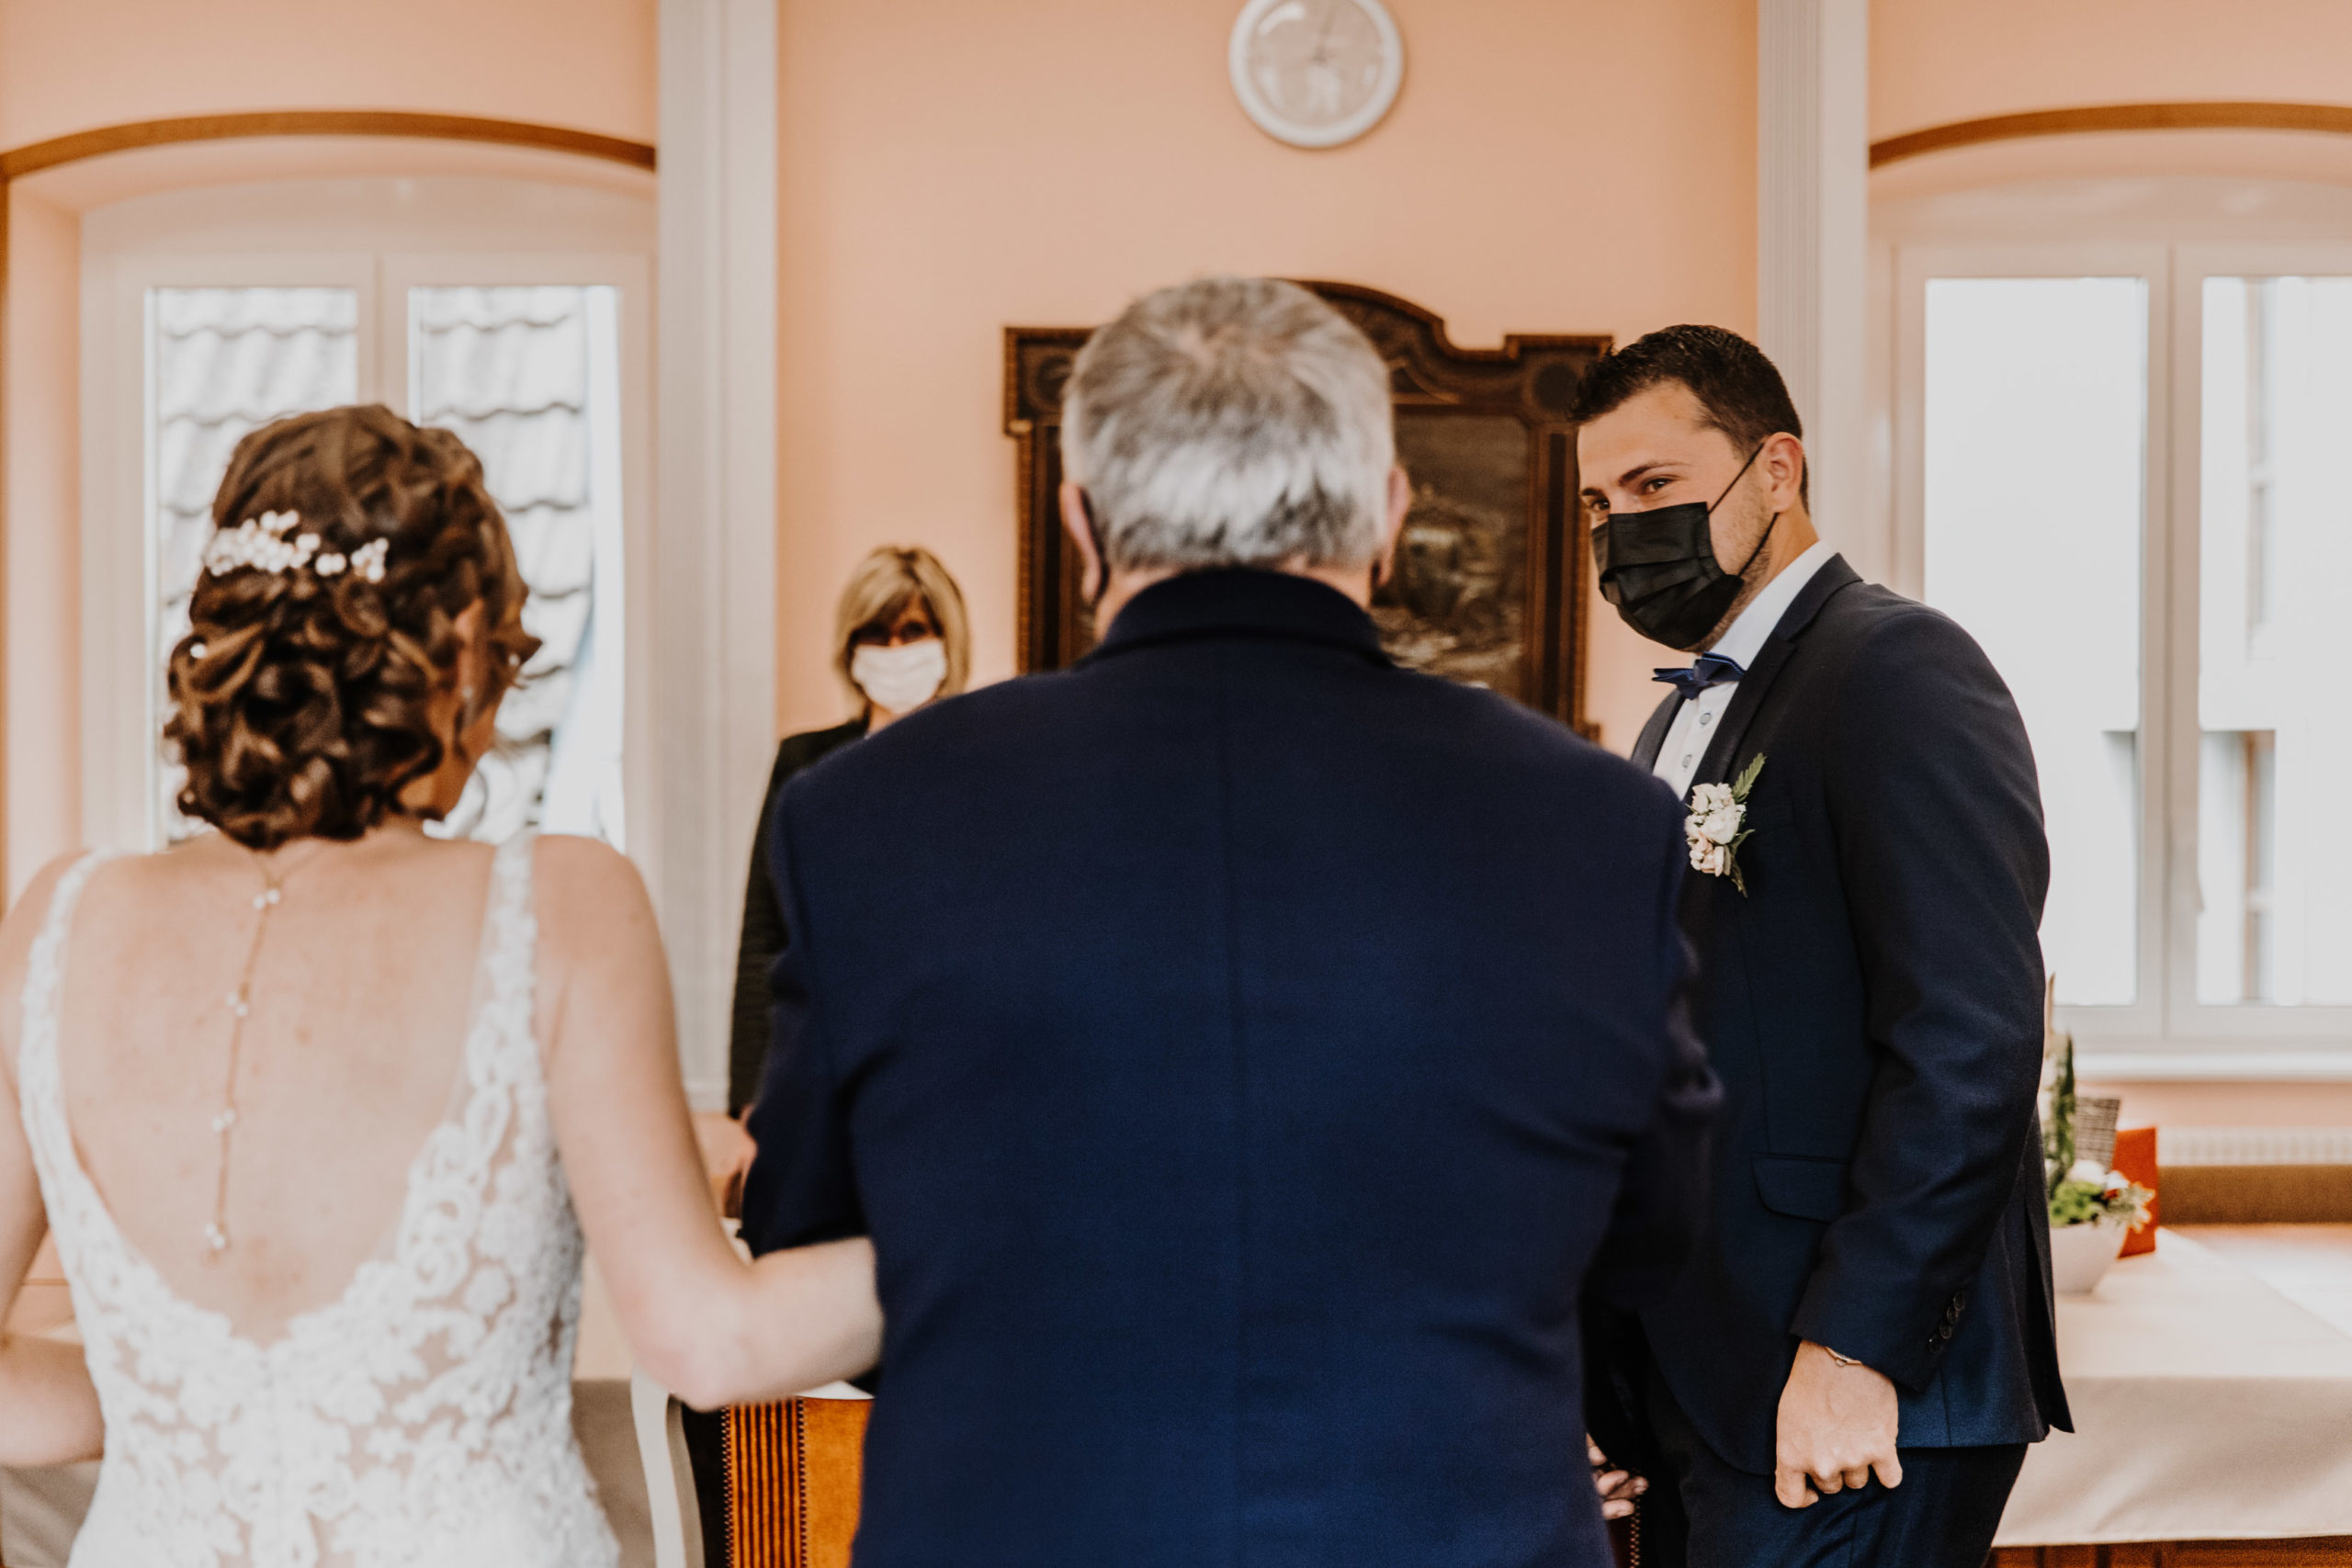 la mariée entre dans la salle des mariages au bras de son père, son mari la découvre